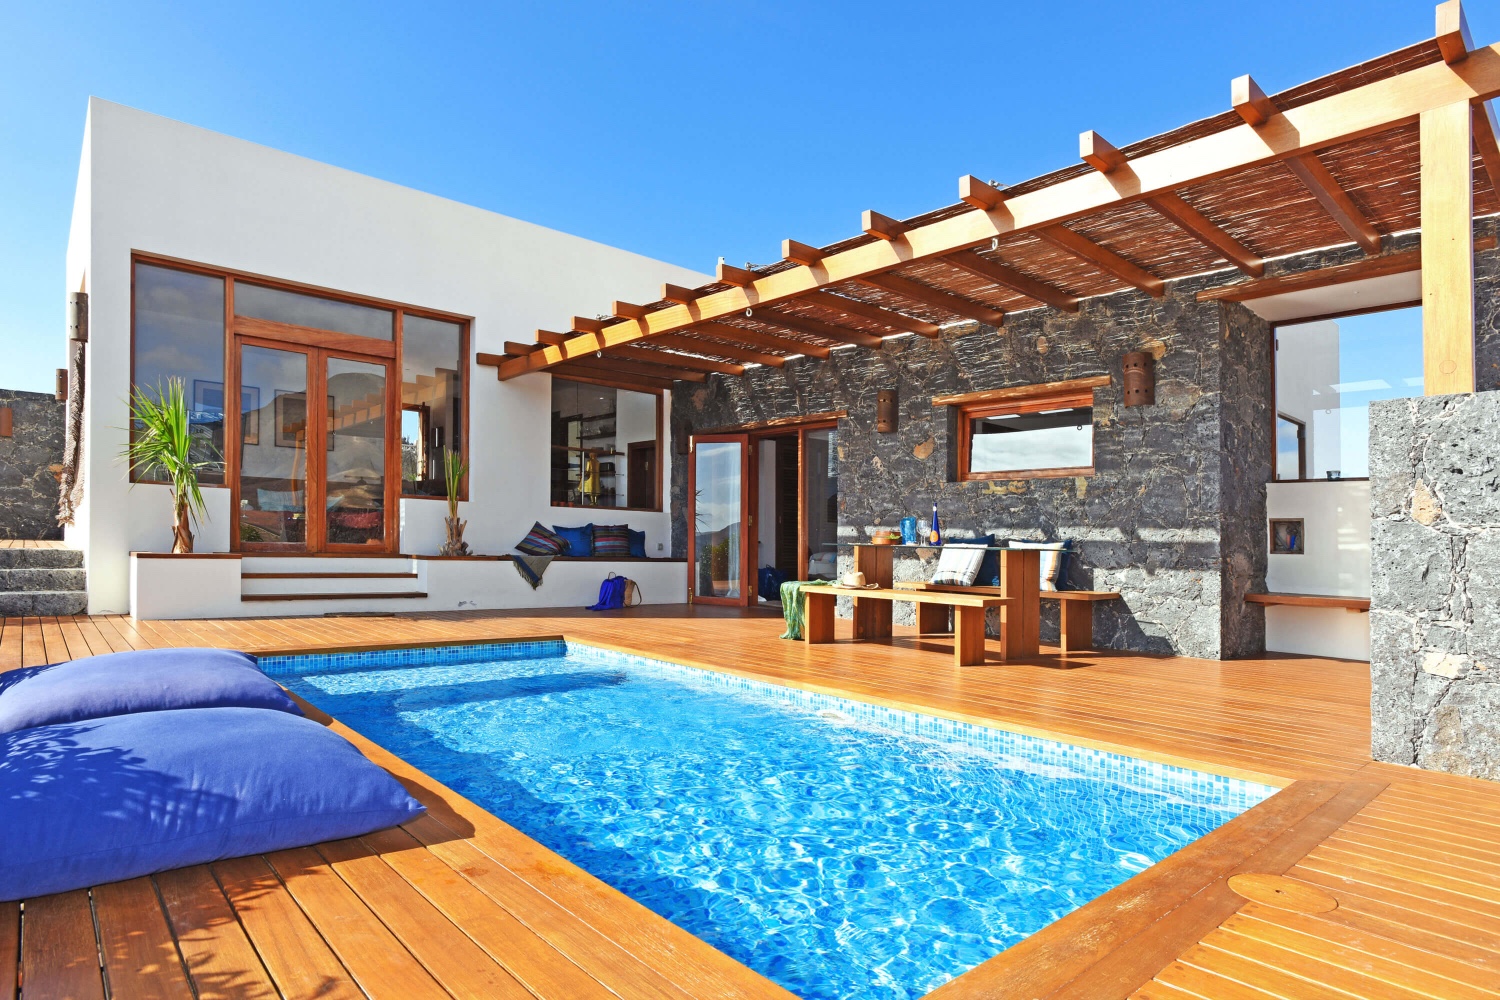 Stijlvol luxe huis, twee slaapkamers, privé zwembad en prachtig uitzicht op het vulkanische landschap in een gebied dicht bij het strand in Pájara